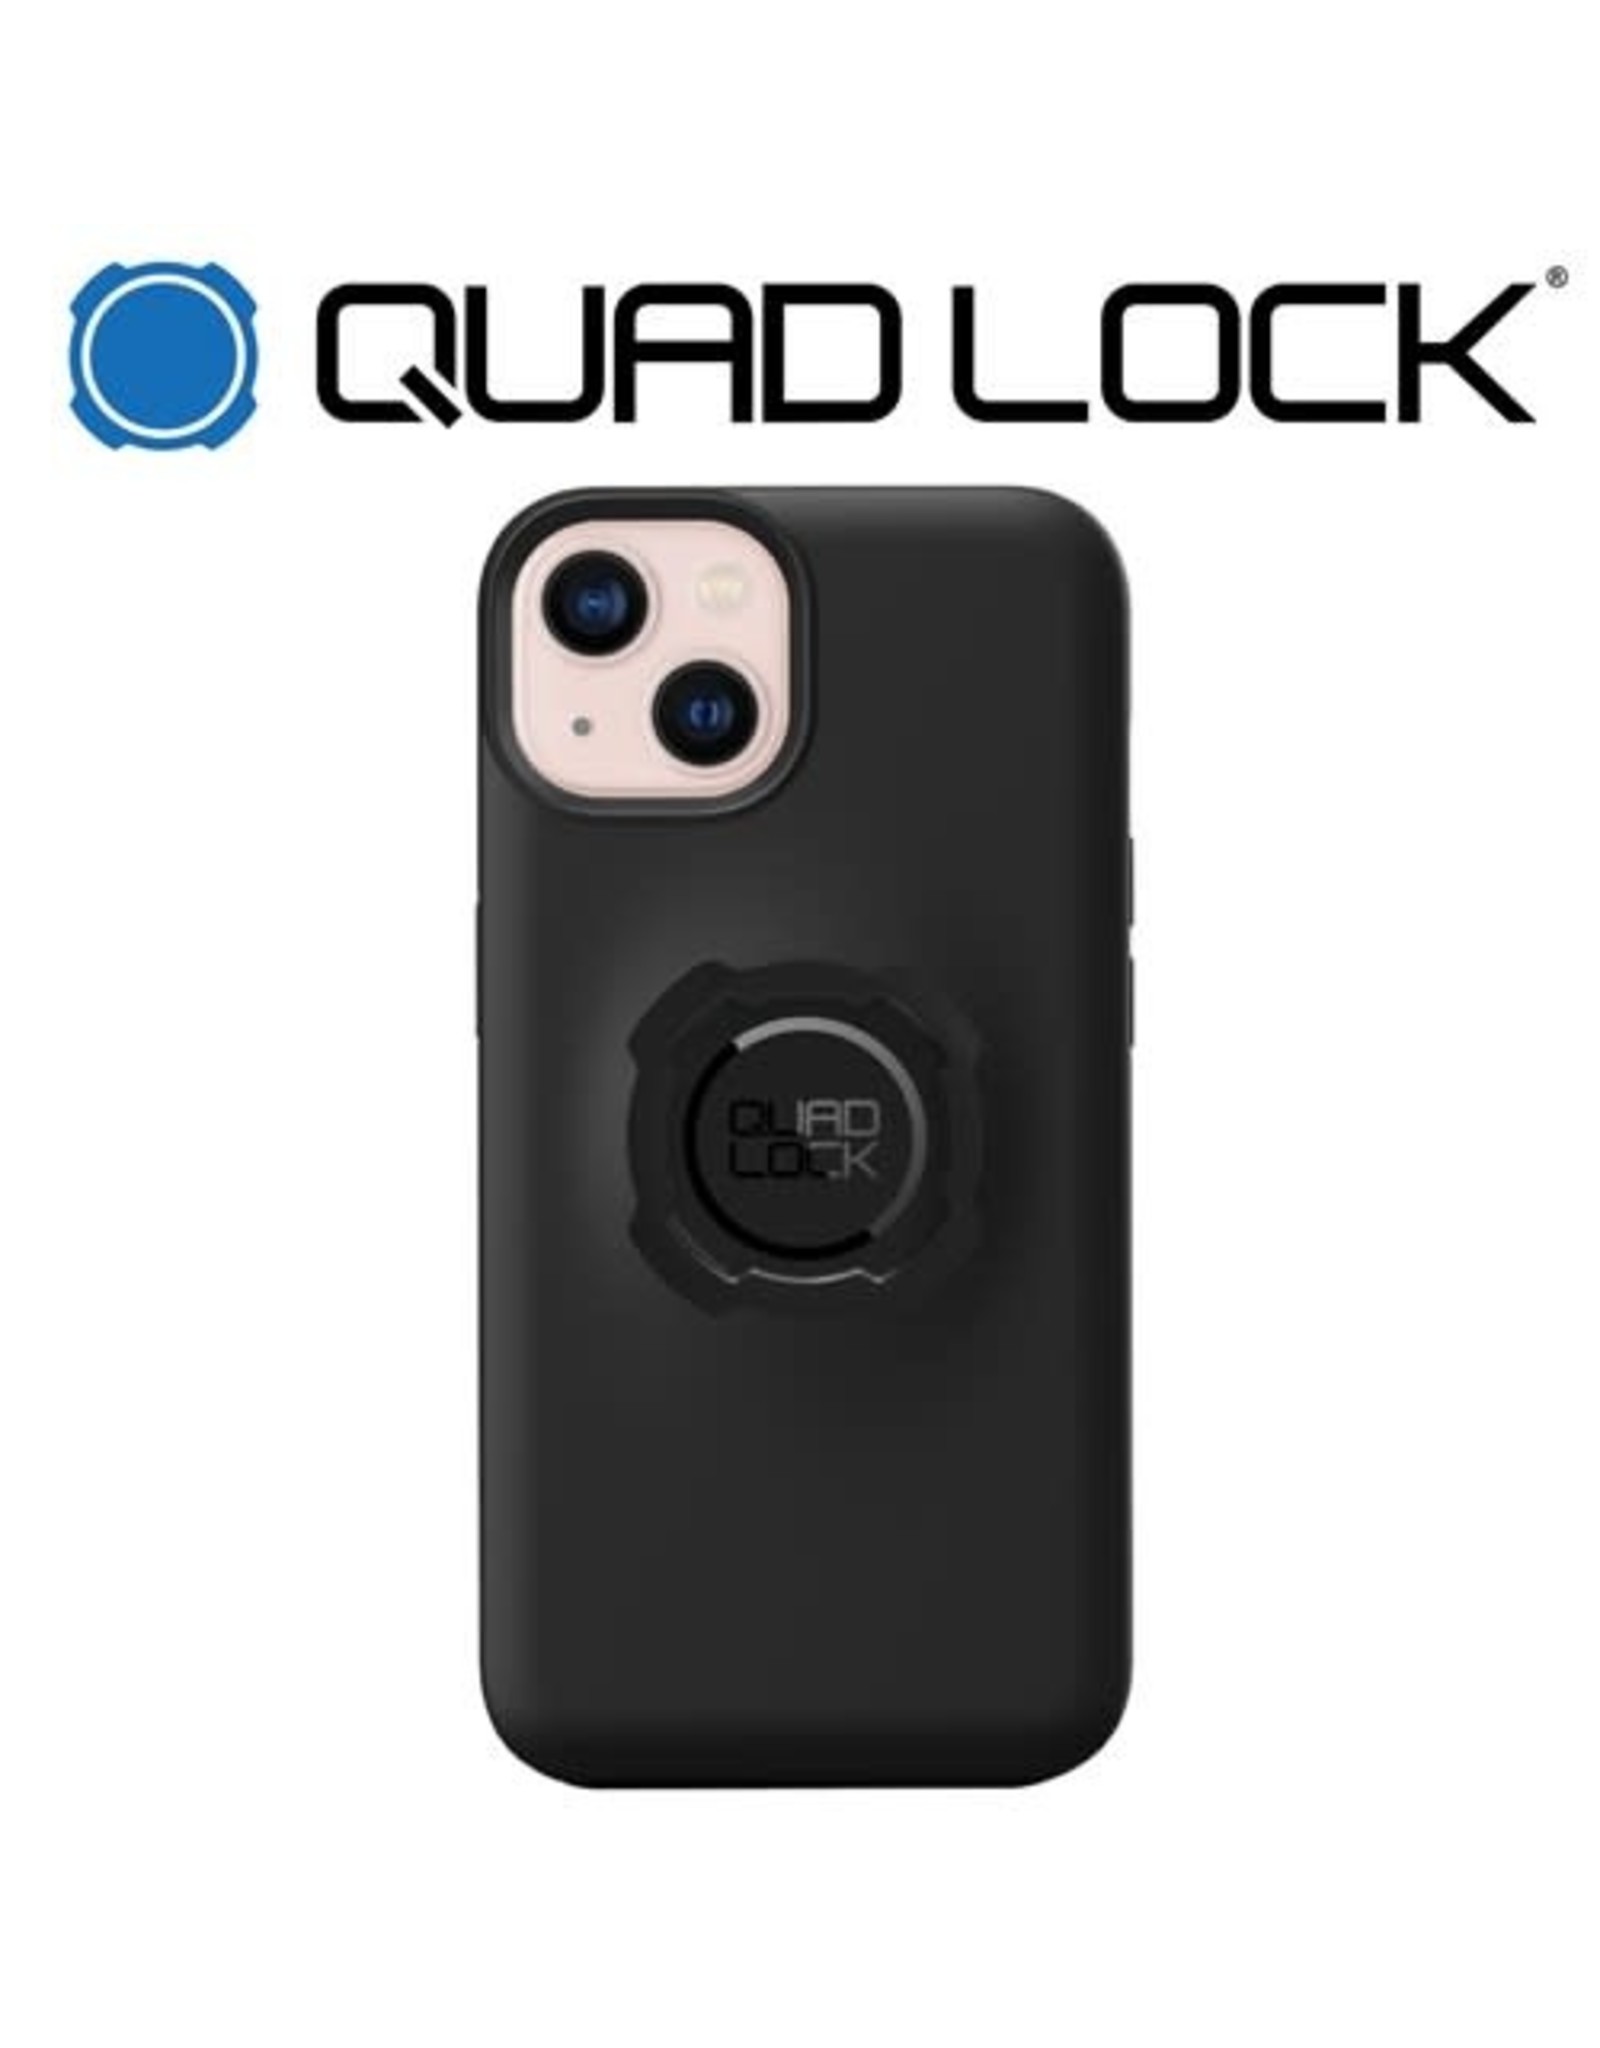 QUAD LOCK QUAD LOCK FOR iPHONE 13 5.8"/6.1" PHONE CASE